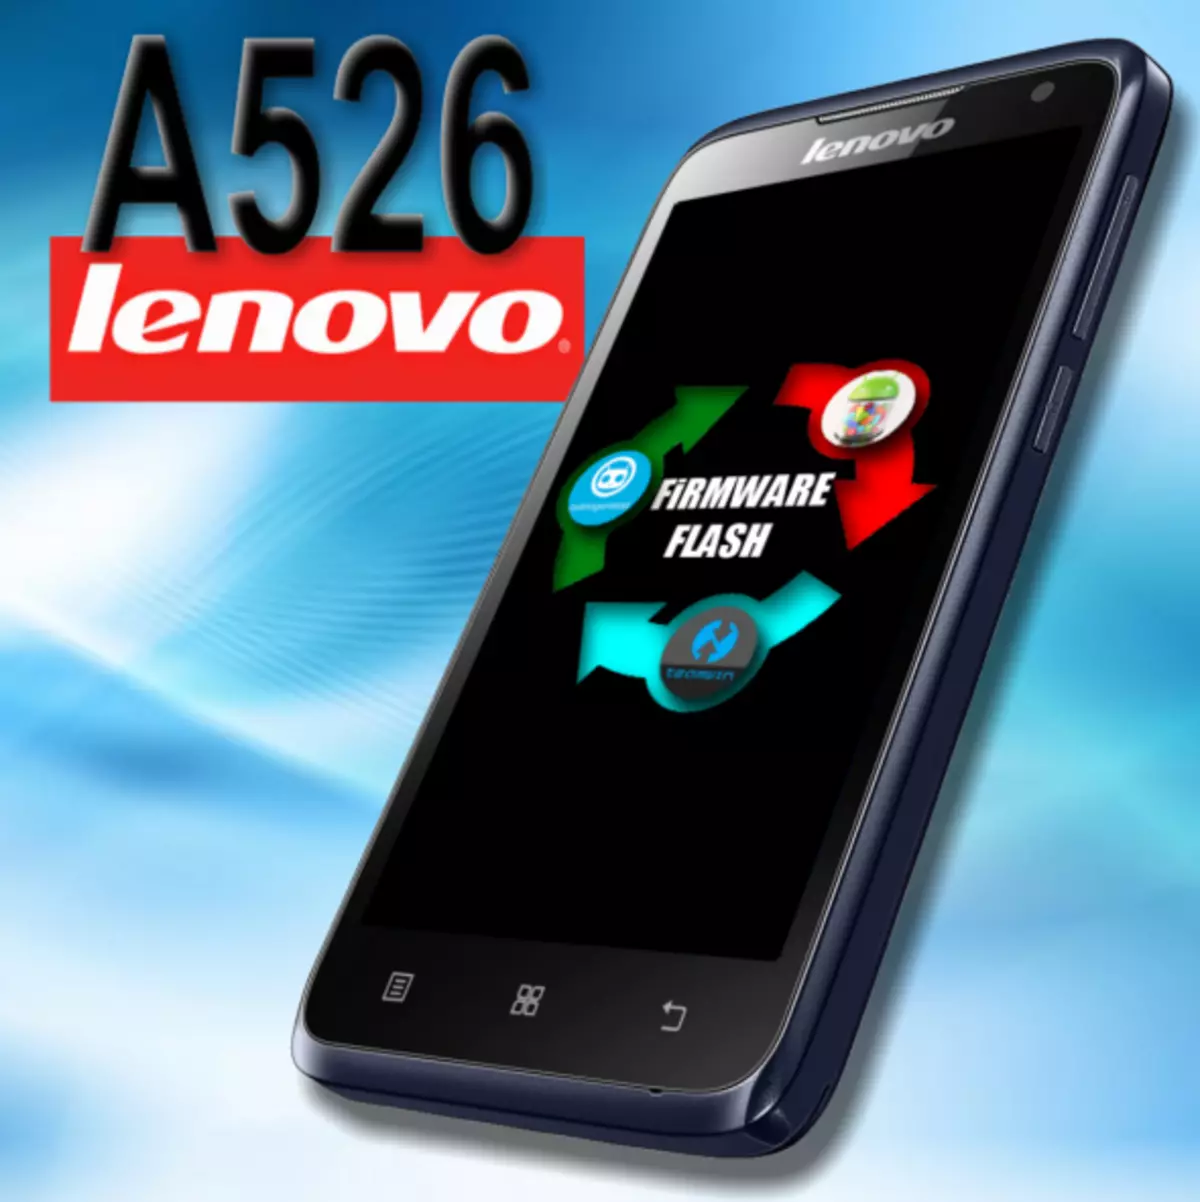 I-Firmware Lenovo A526.